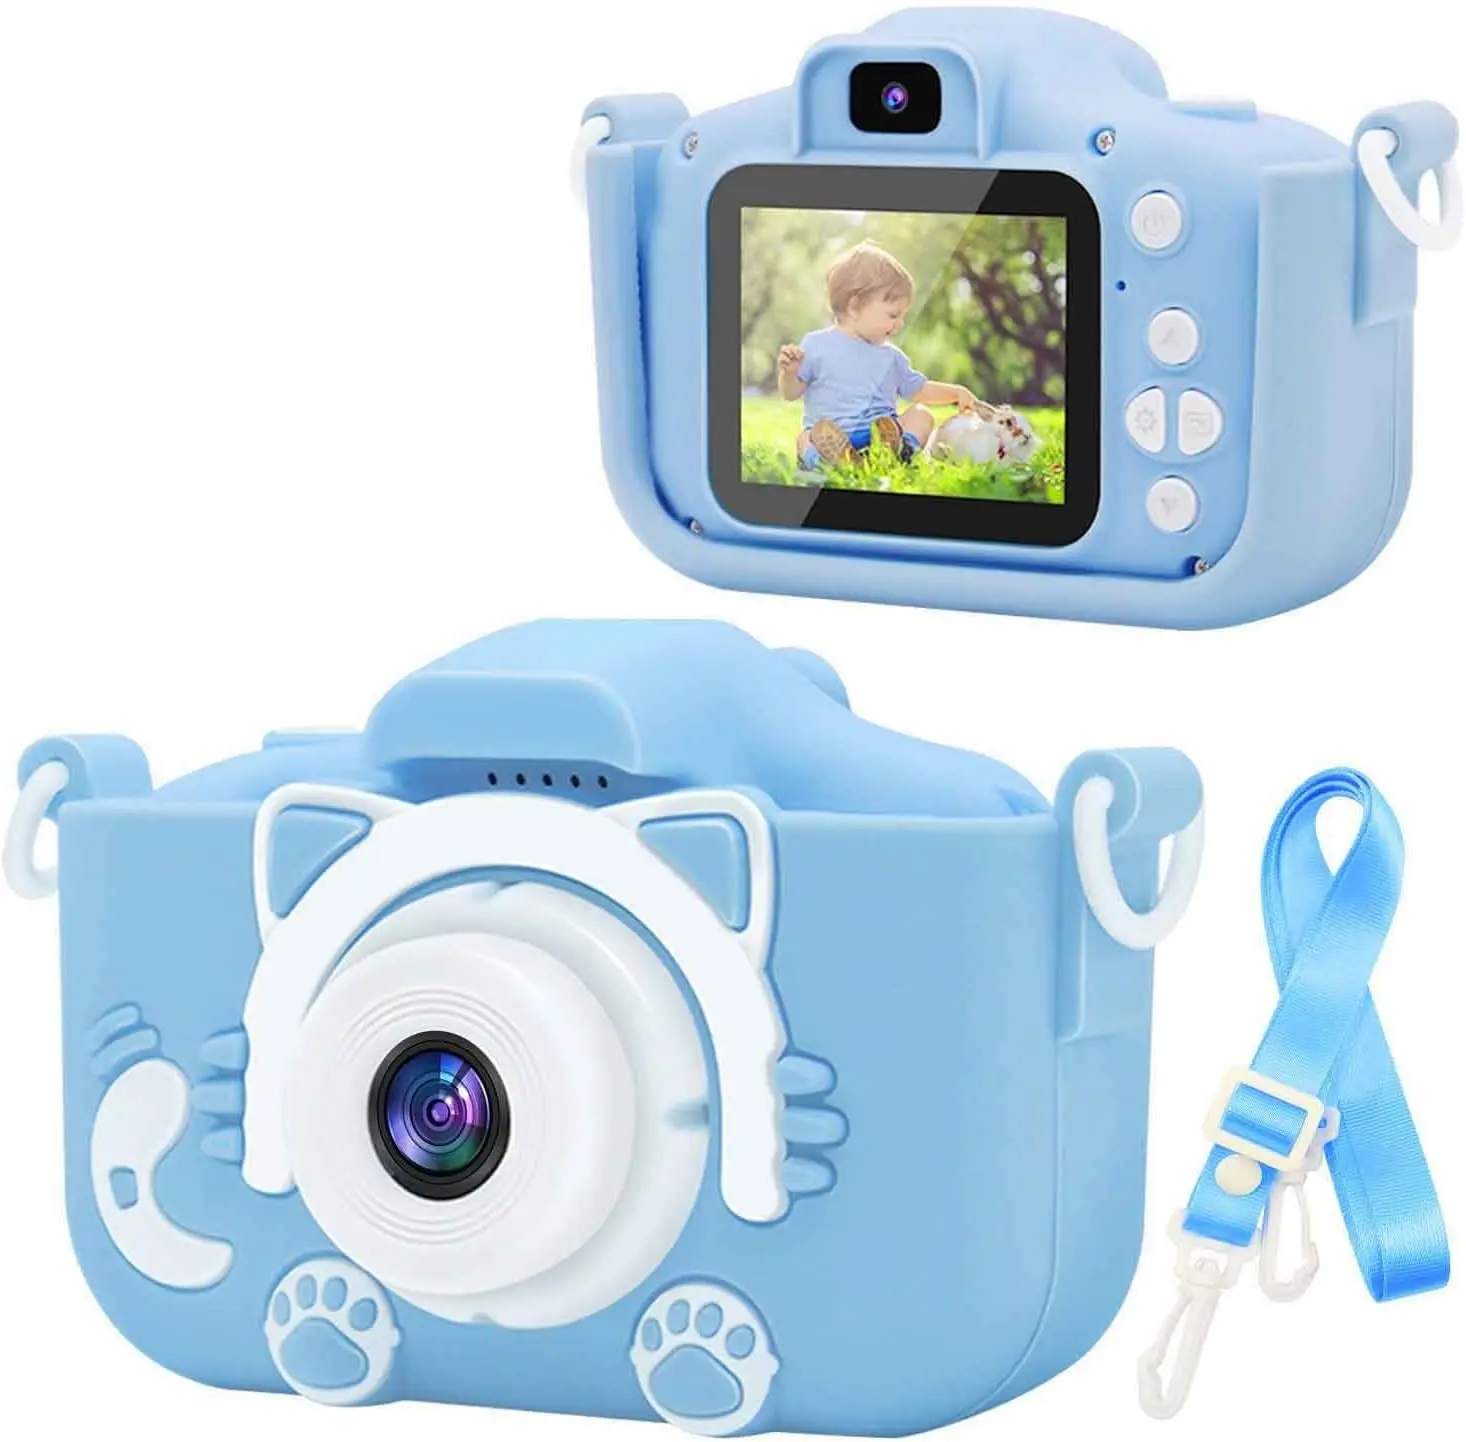 2.0 Inch Ips Scherm Hd 1080P Camcorder Kinderfoto En Videocamera Kinderen Speelgoed Cadeau Digitale Camera Voor Kinderen